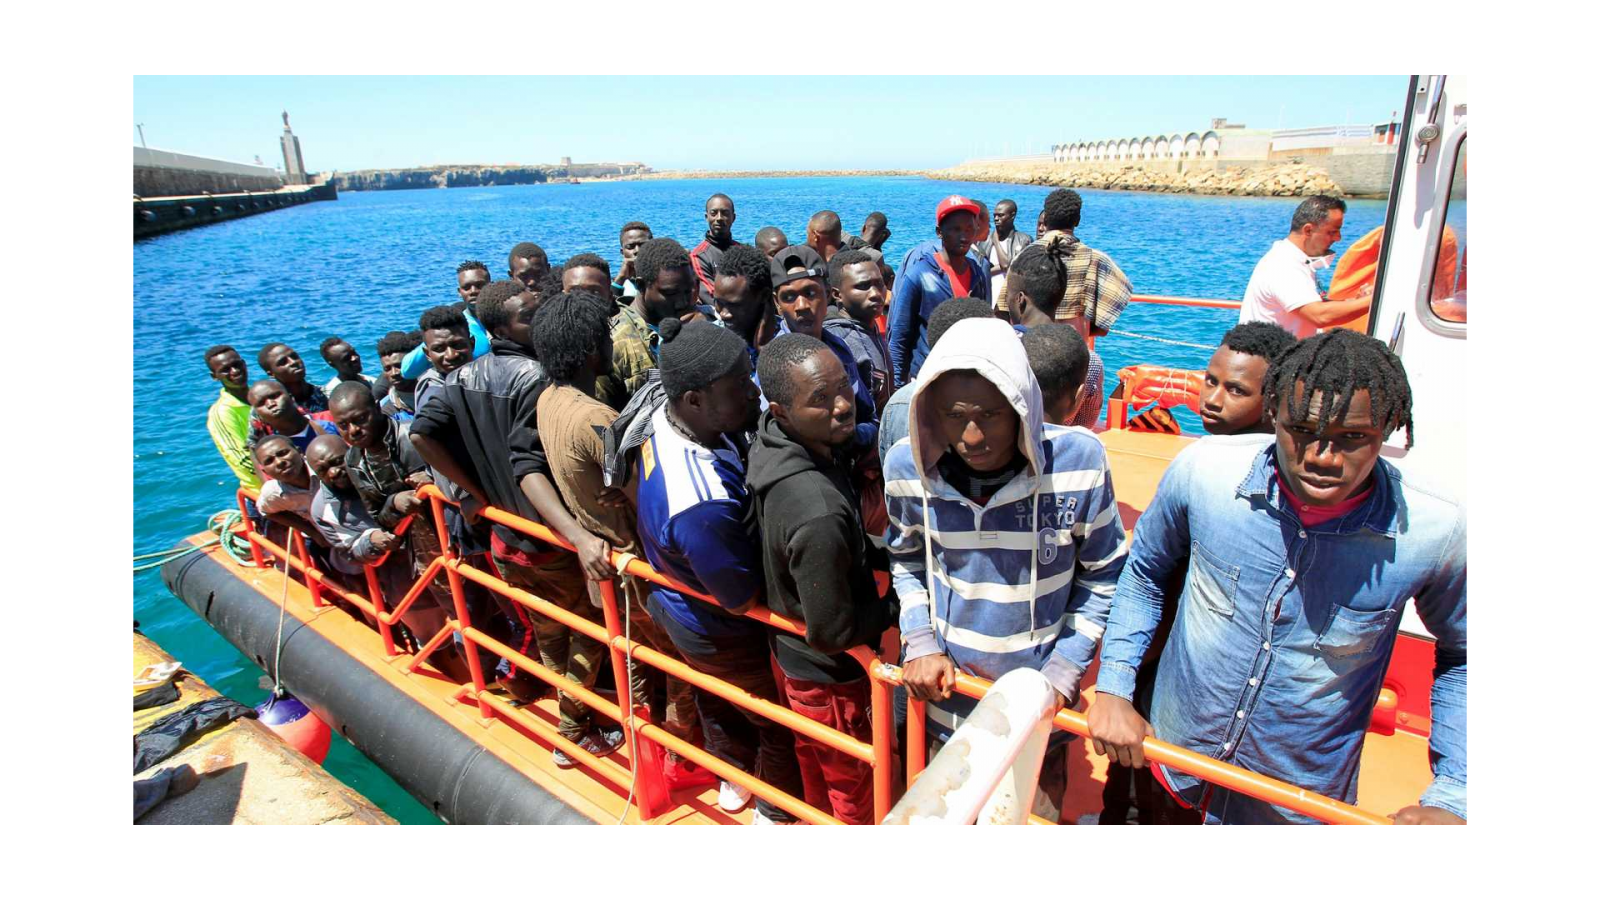  Todo noticias mañana - Se incrementa la llegada de migrantes irregulares tras la relajación de las medidas por la Covid-19 - Escuchar ahora